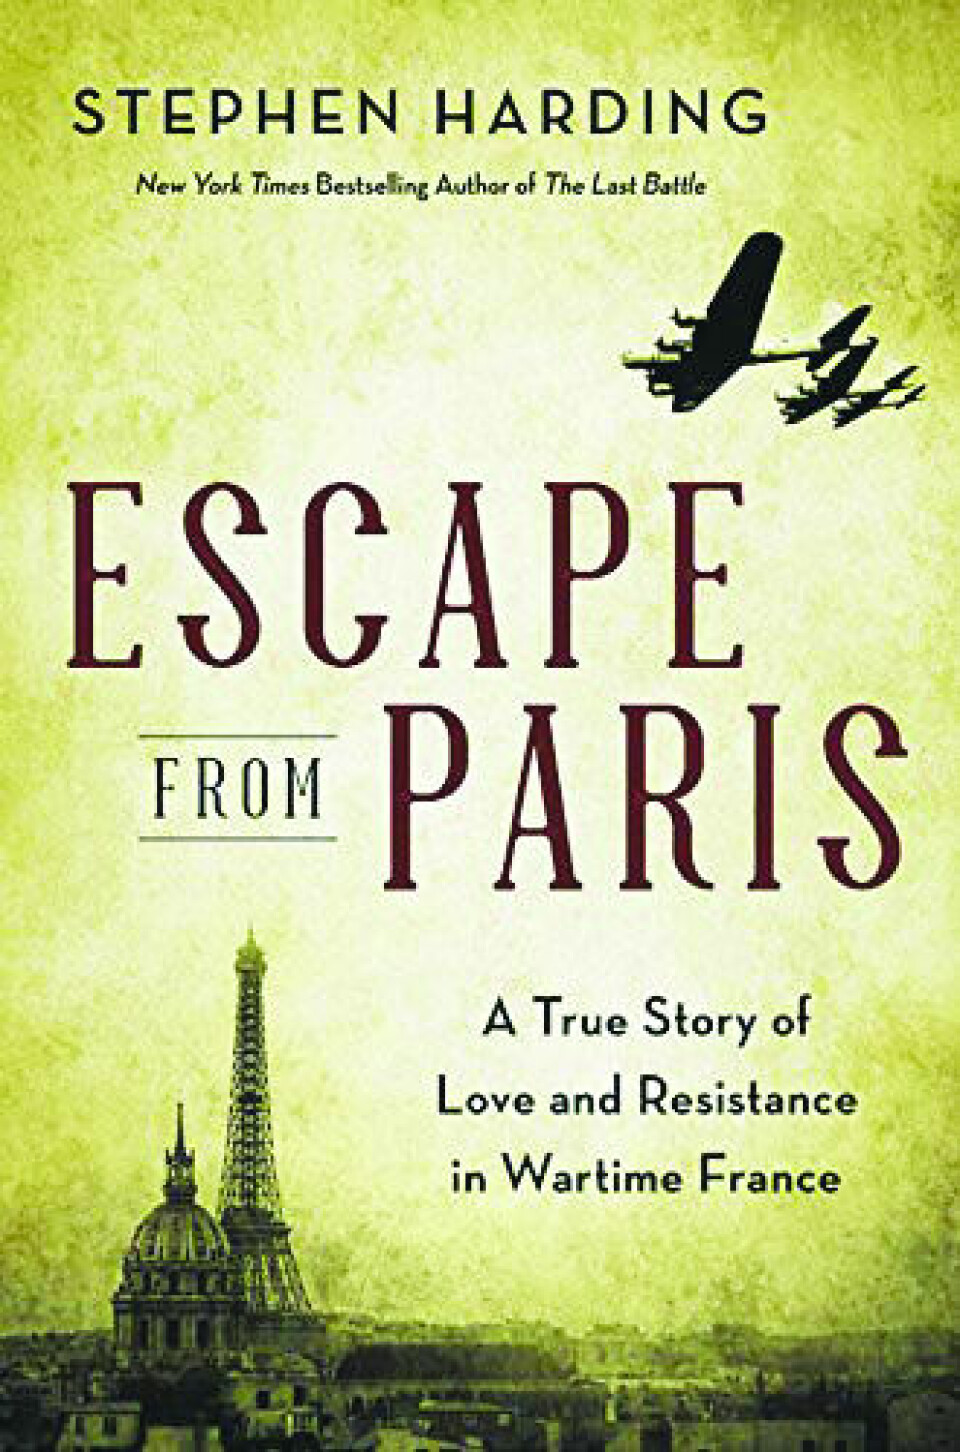 Escape from Paris